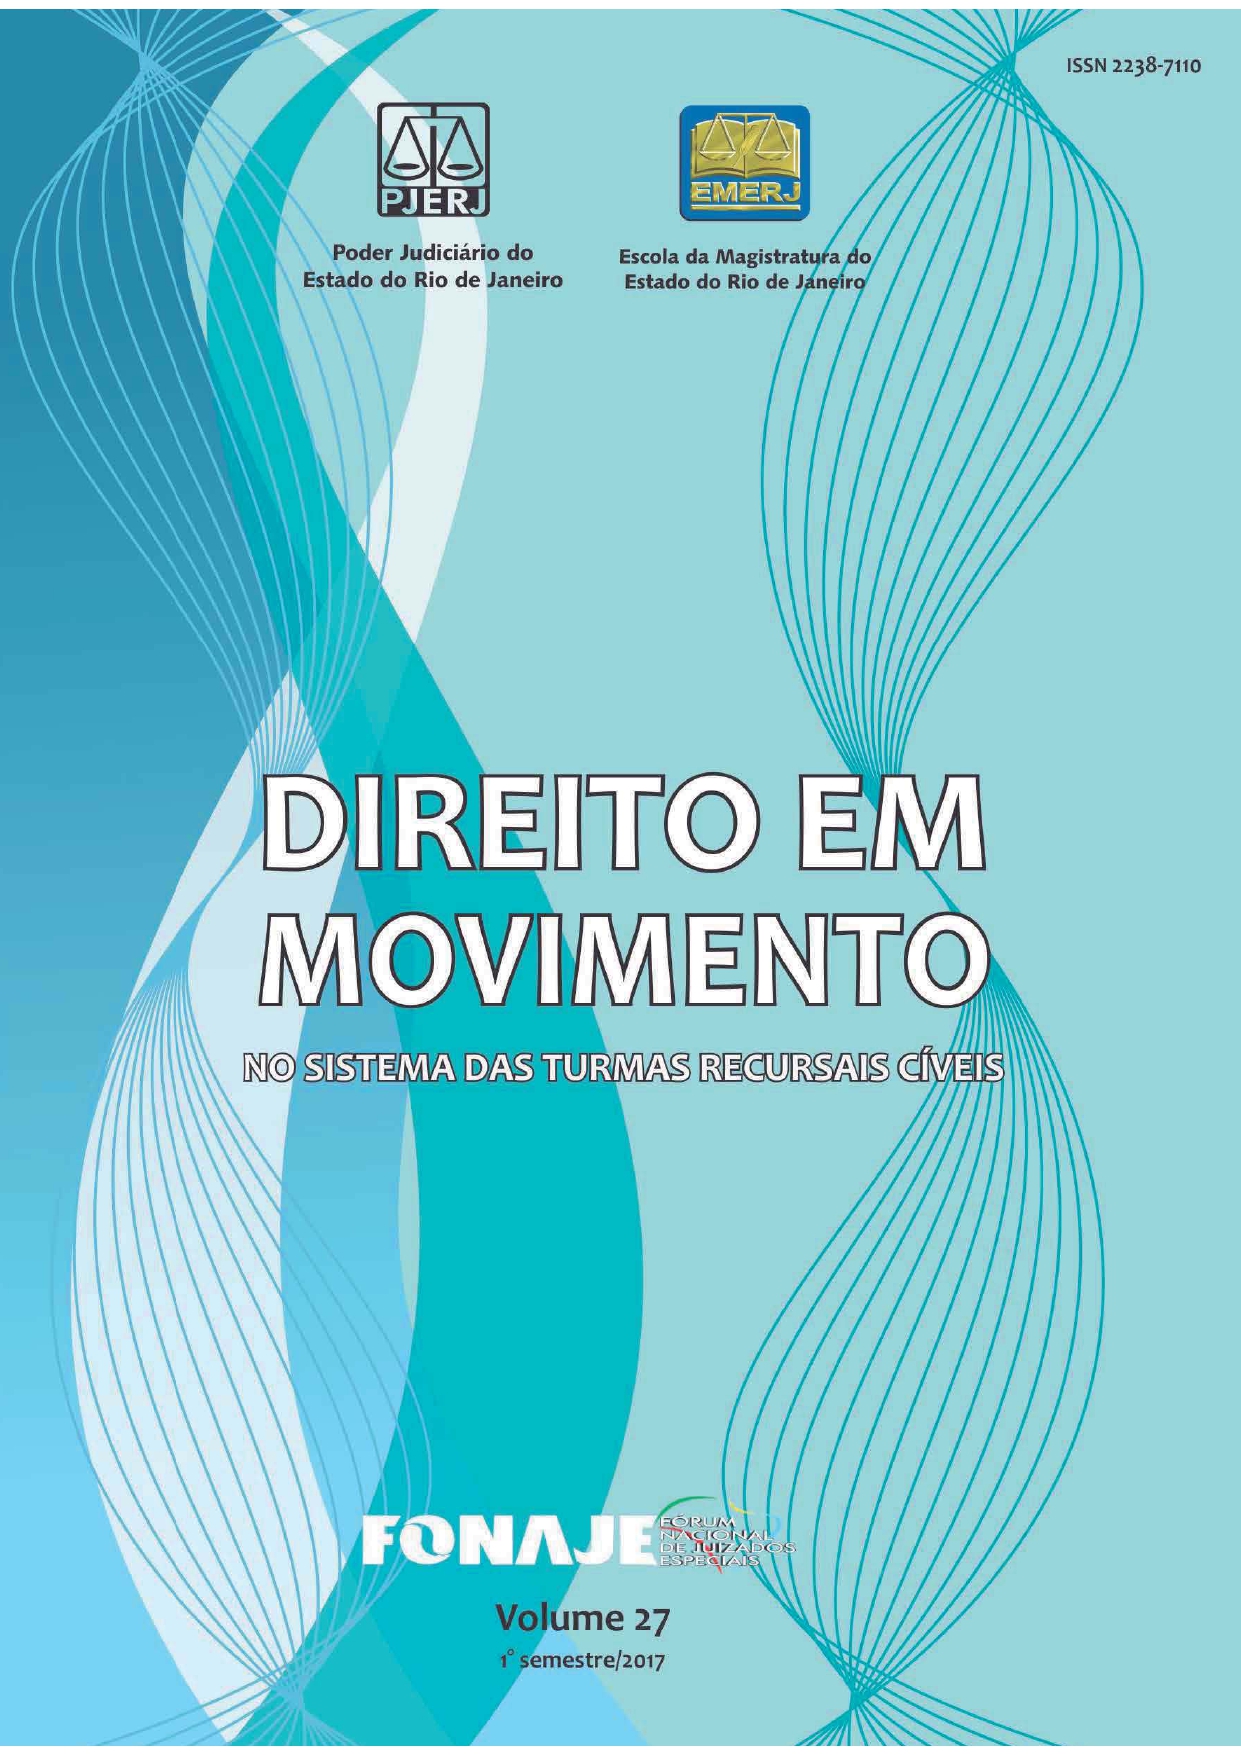 					Afficher Vol. 27 (2017): Revista Direito em Movimento (Numeração antiga)
				